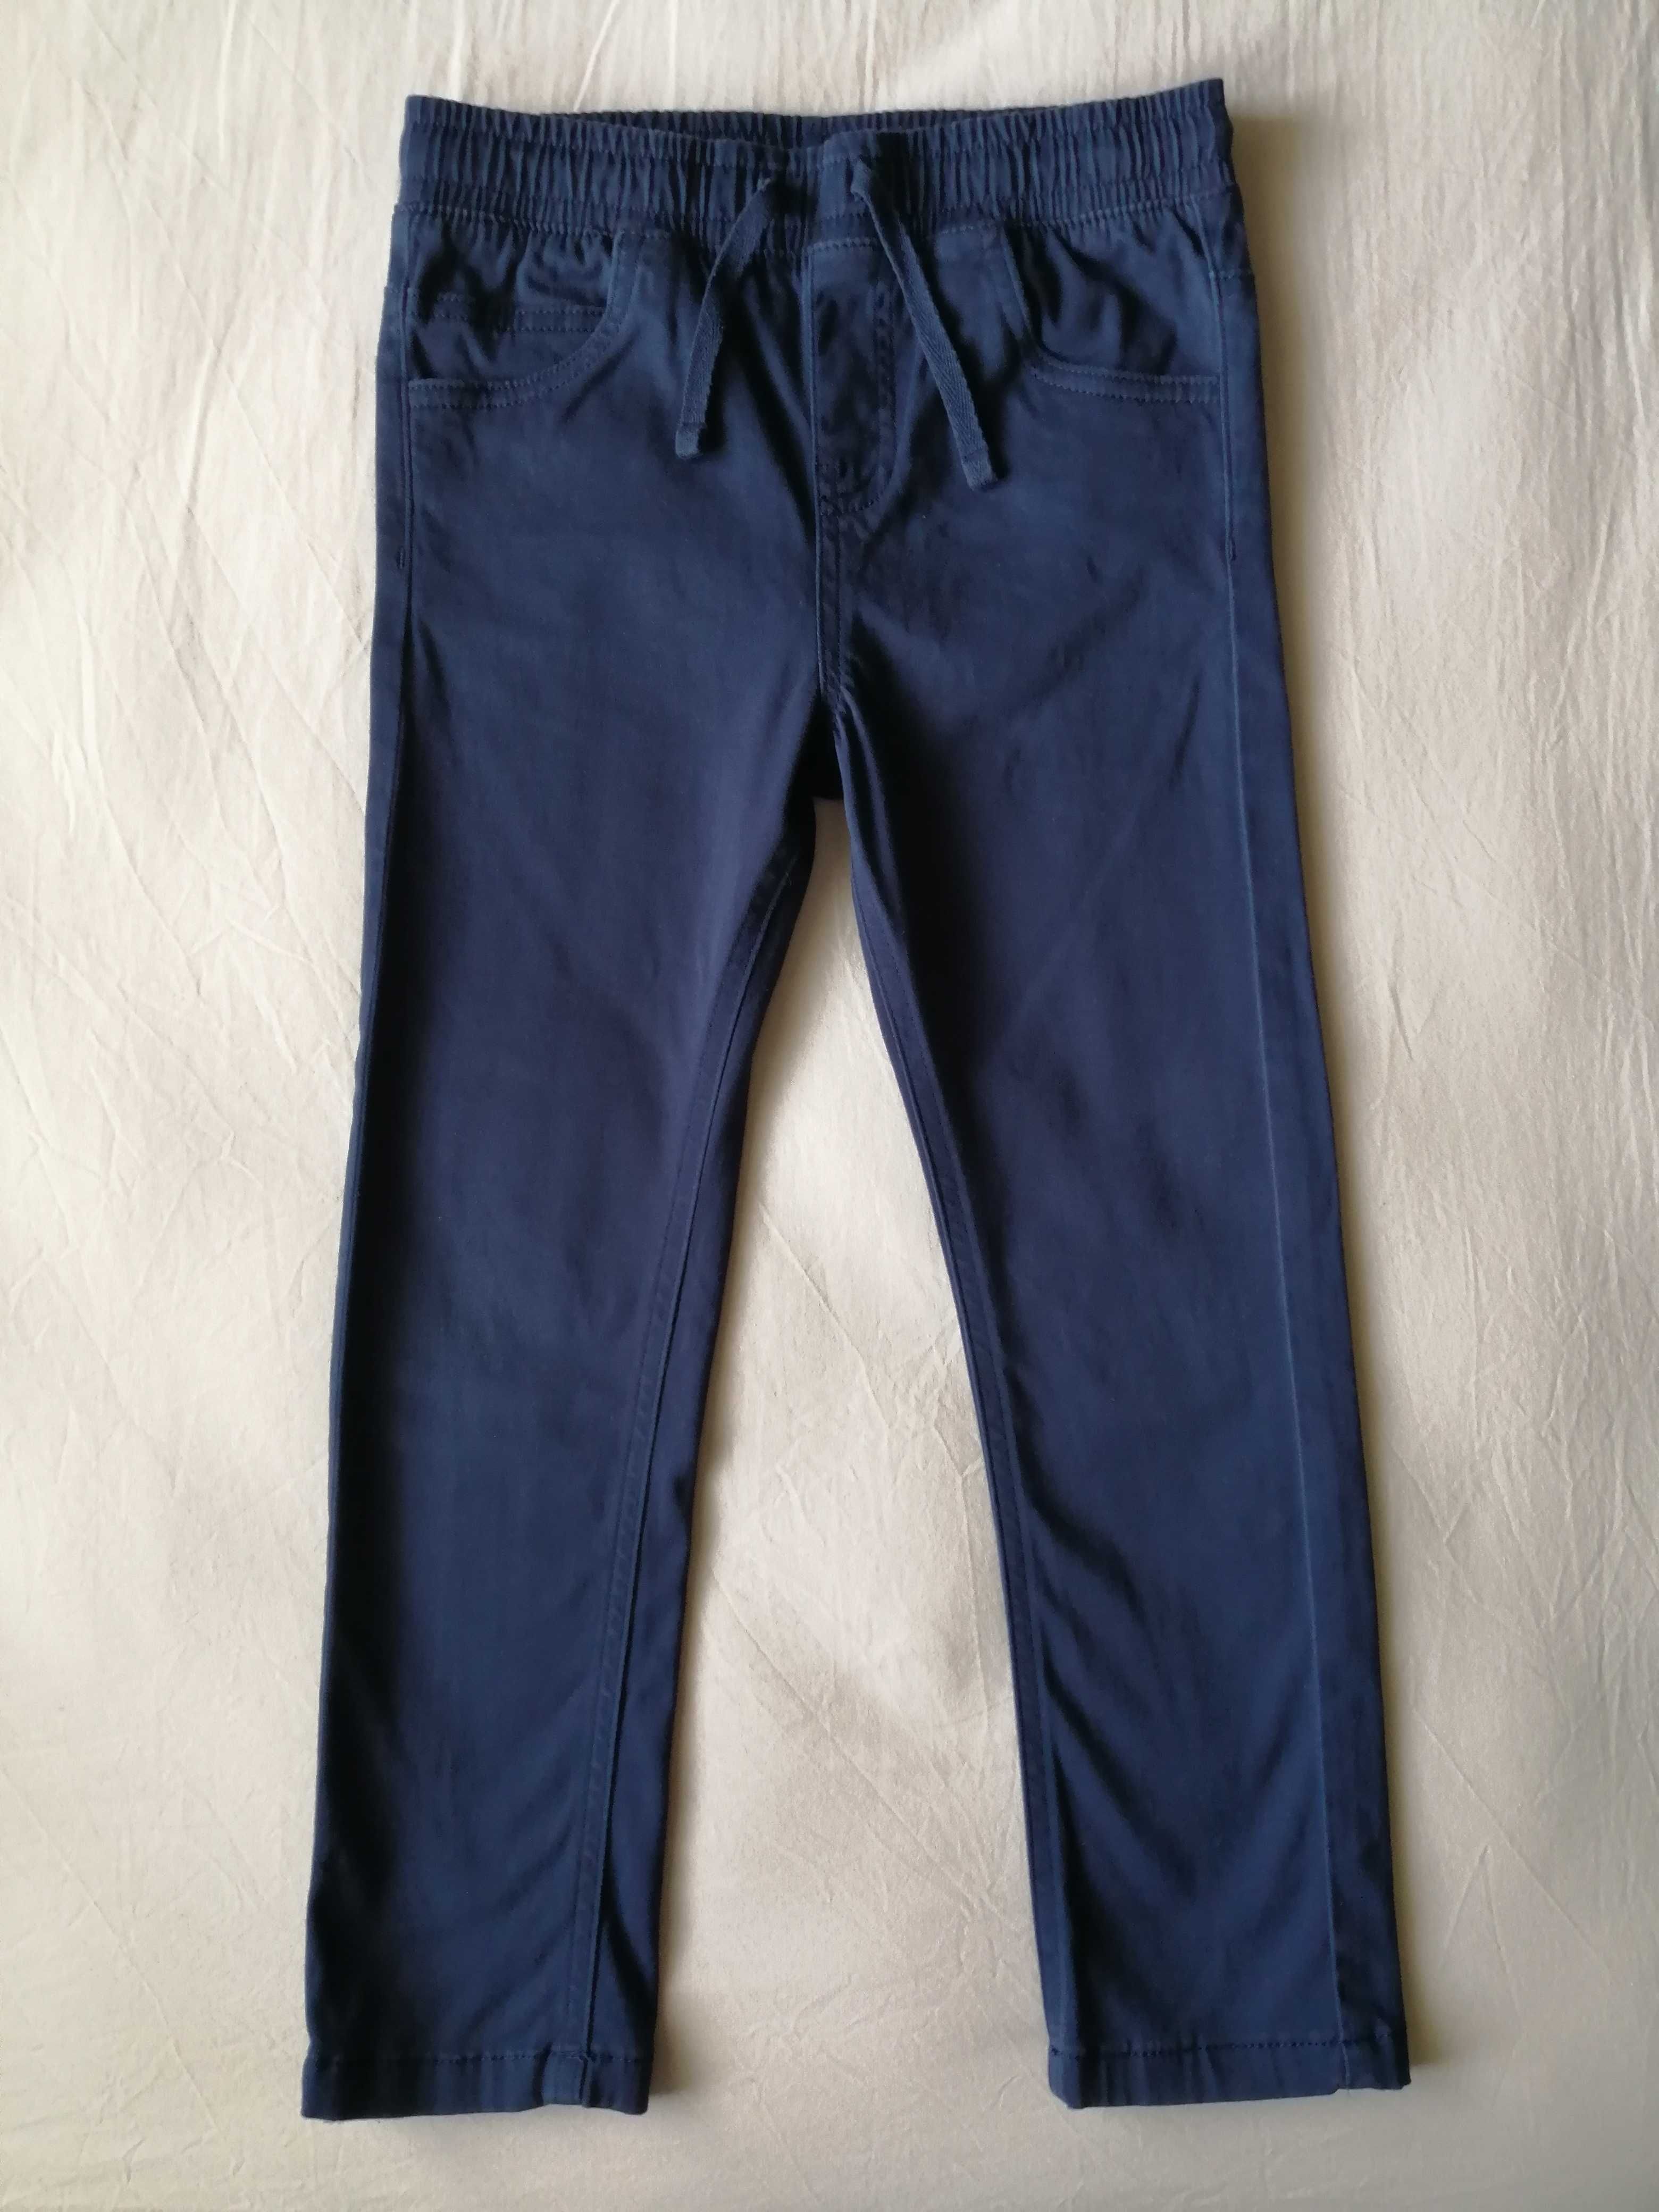 Дънки за момче H&M и панталон TU в отлично състояние, 116 см., 5-6 г.